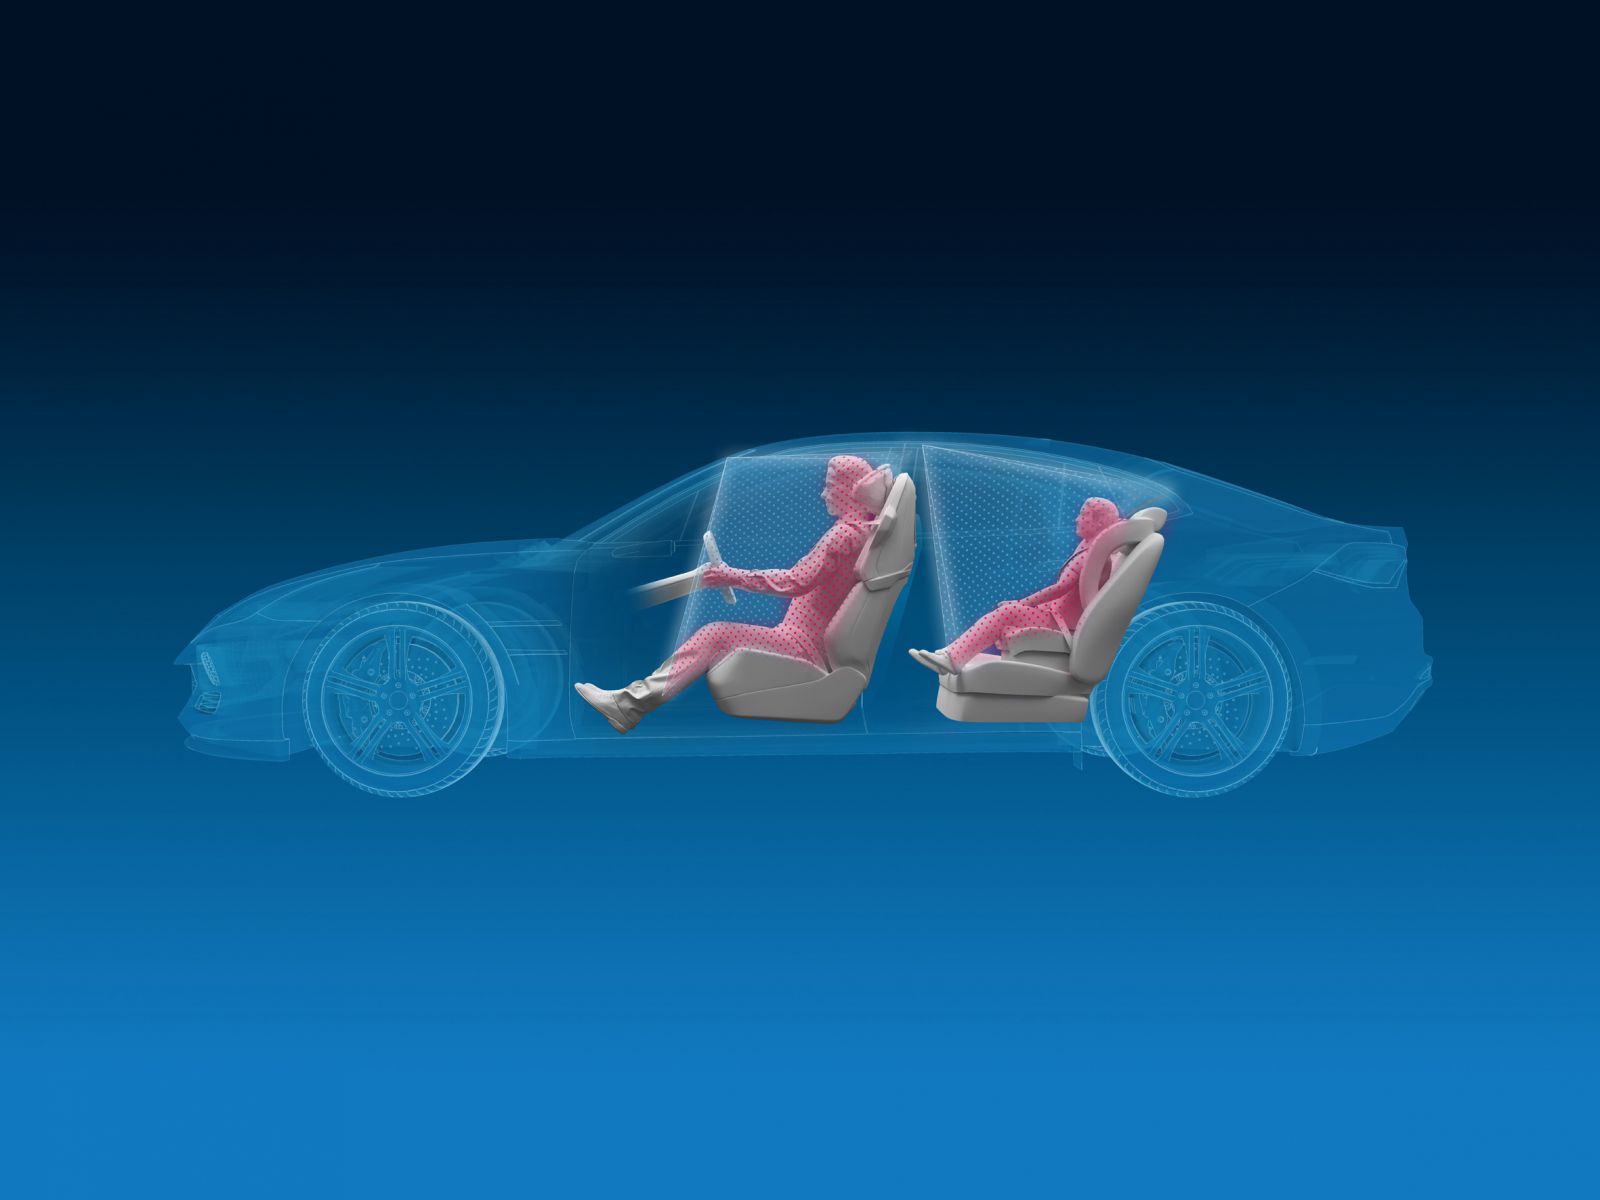 Un sistema 3D per osservare l’abitacolo dell’auto